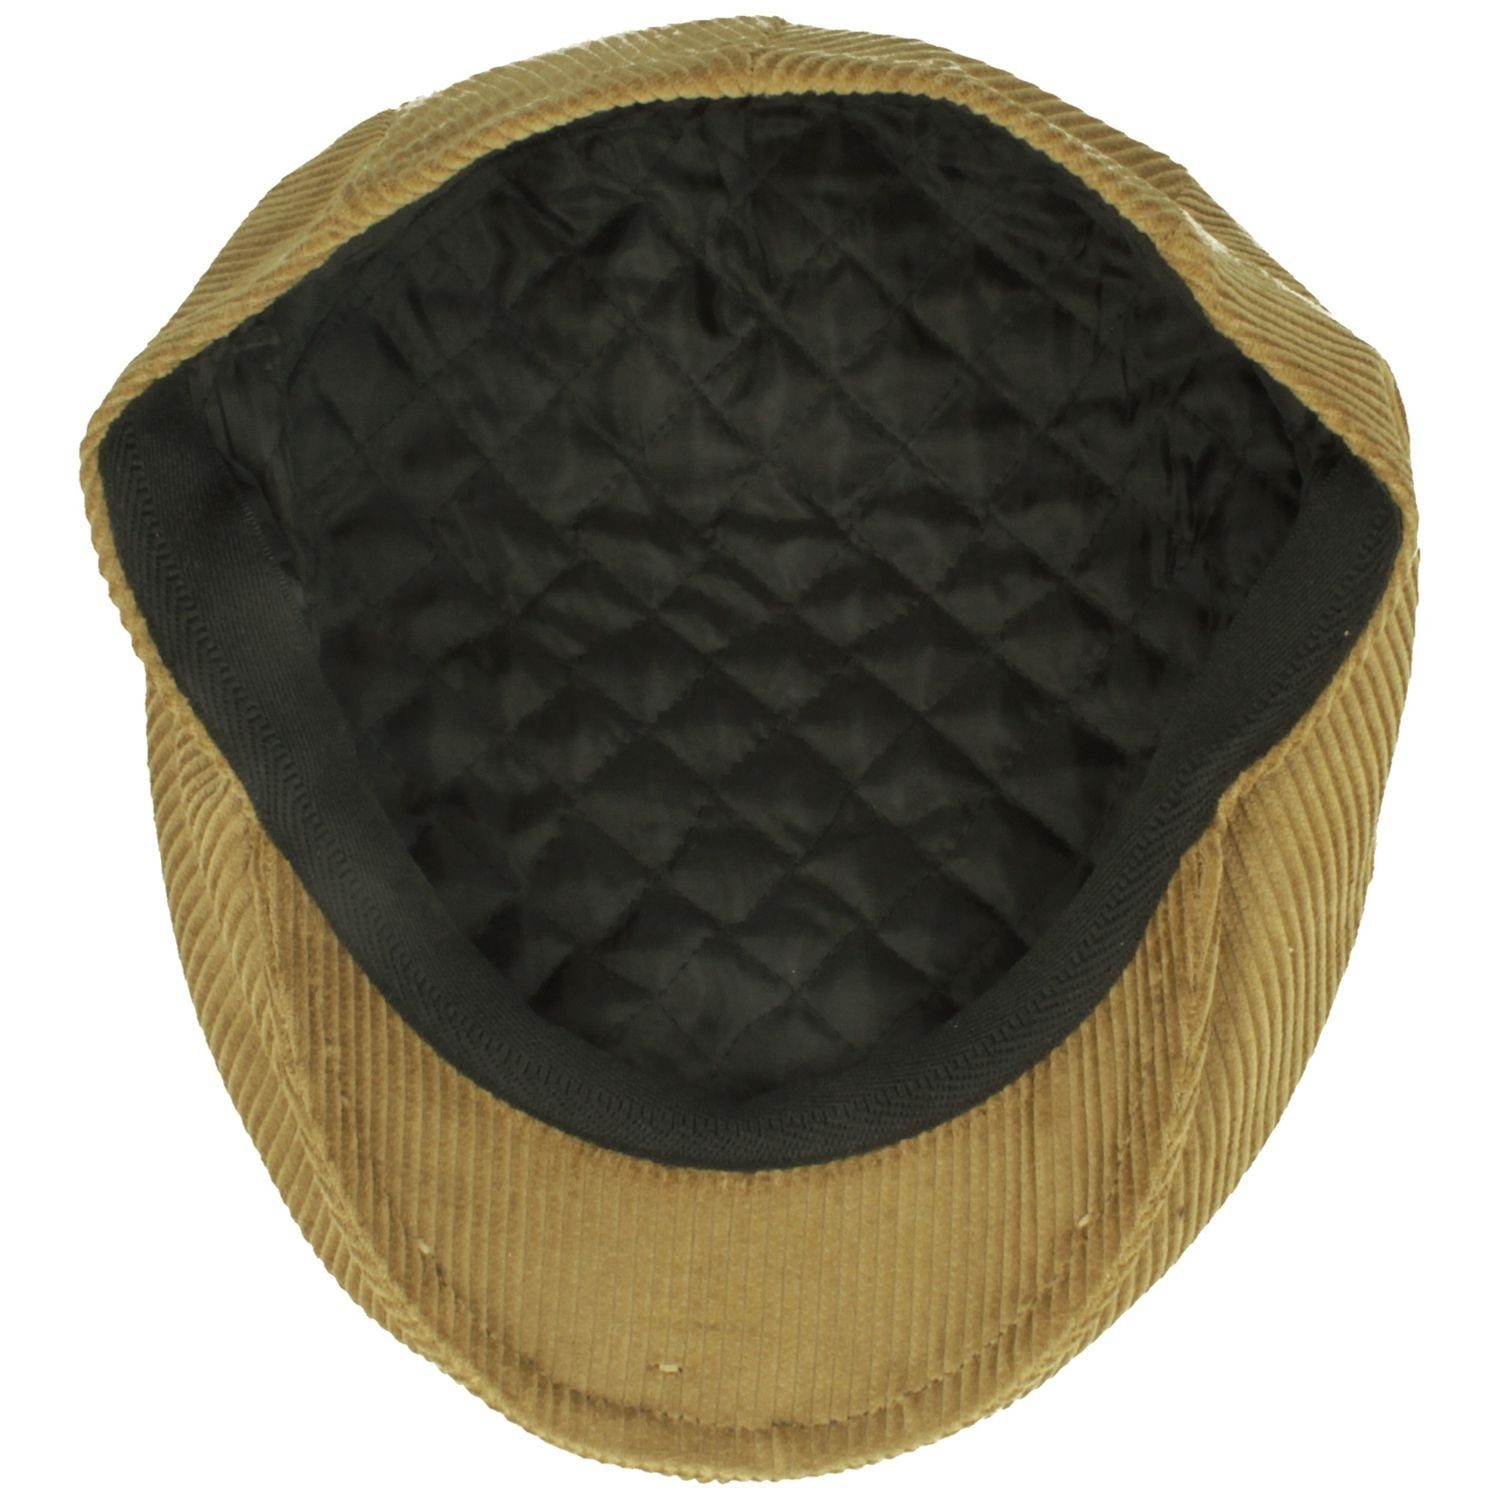 Breiter Schiebermütze Flatcap aus mit Baumwolle Cord-Streifen camel